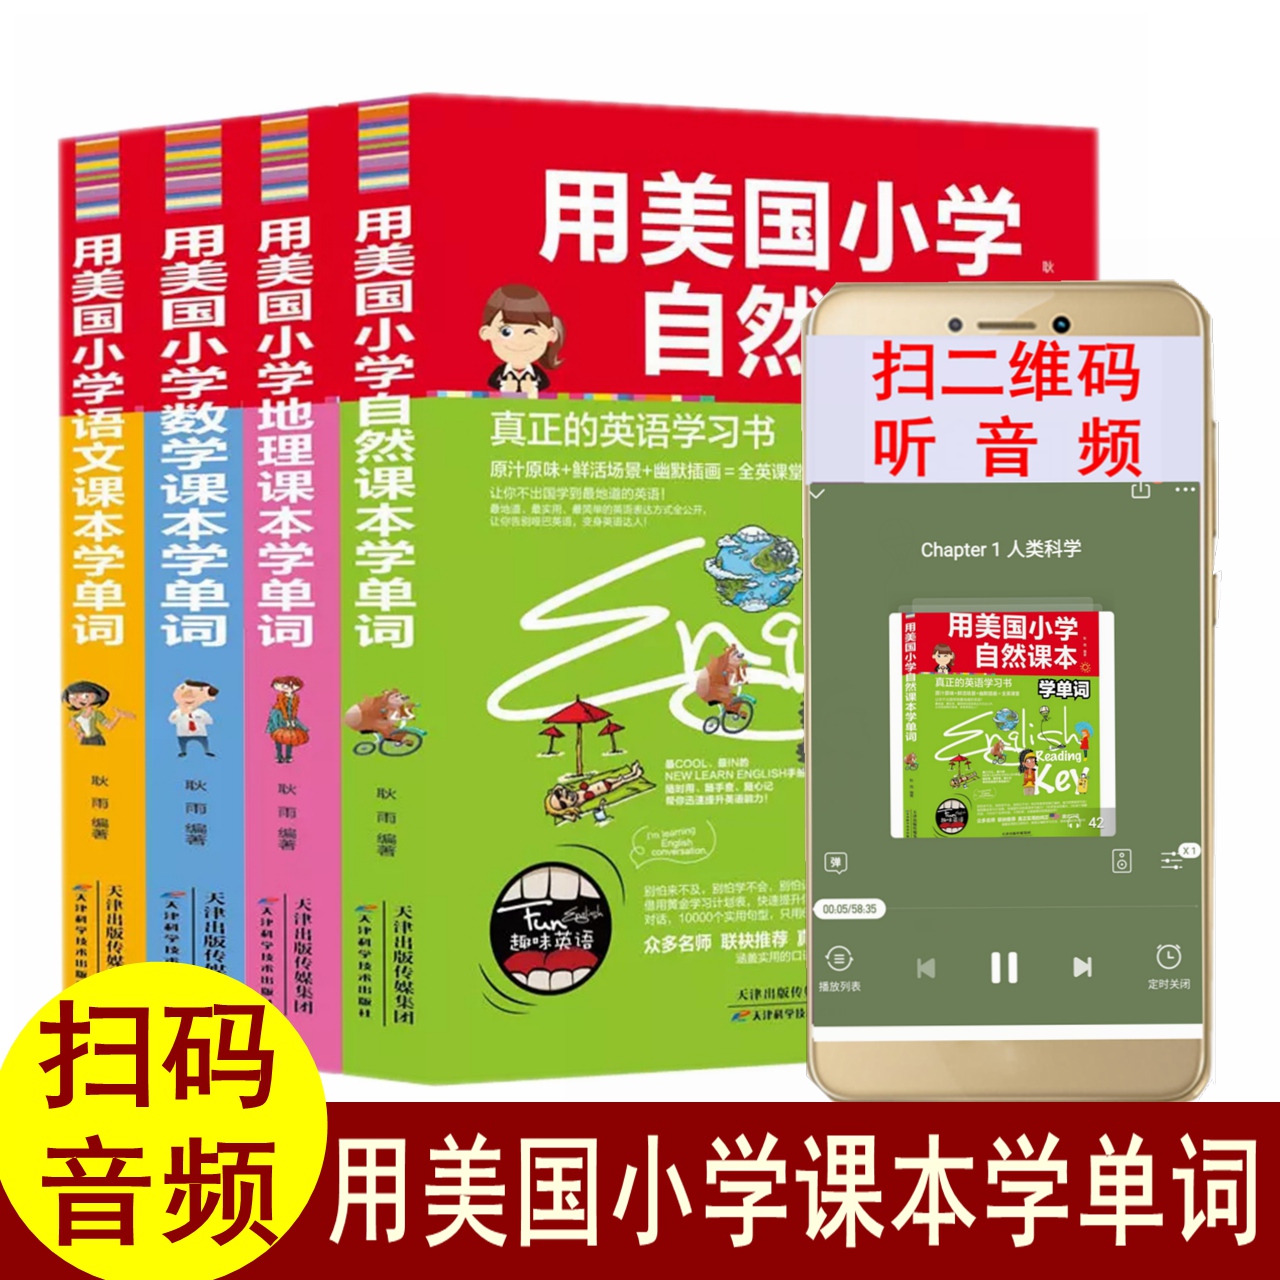 扫码音频 4册用美国小学地理语文数学自然课本学单词 英汉双语读物小学生英